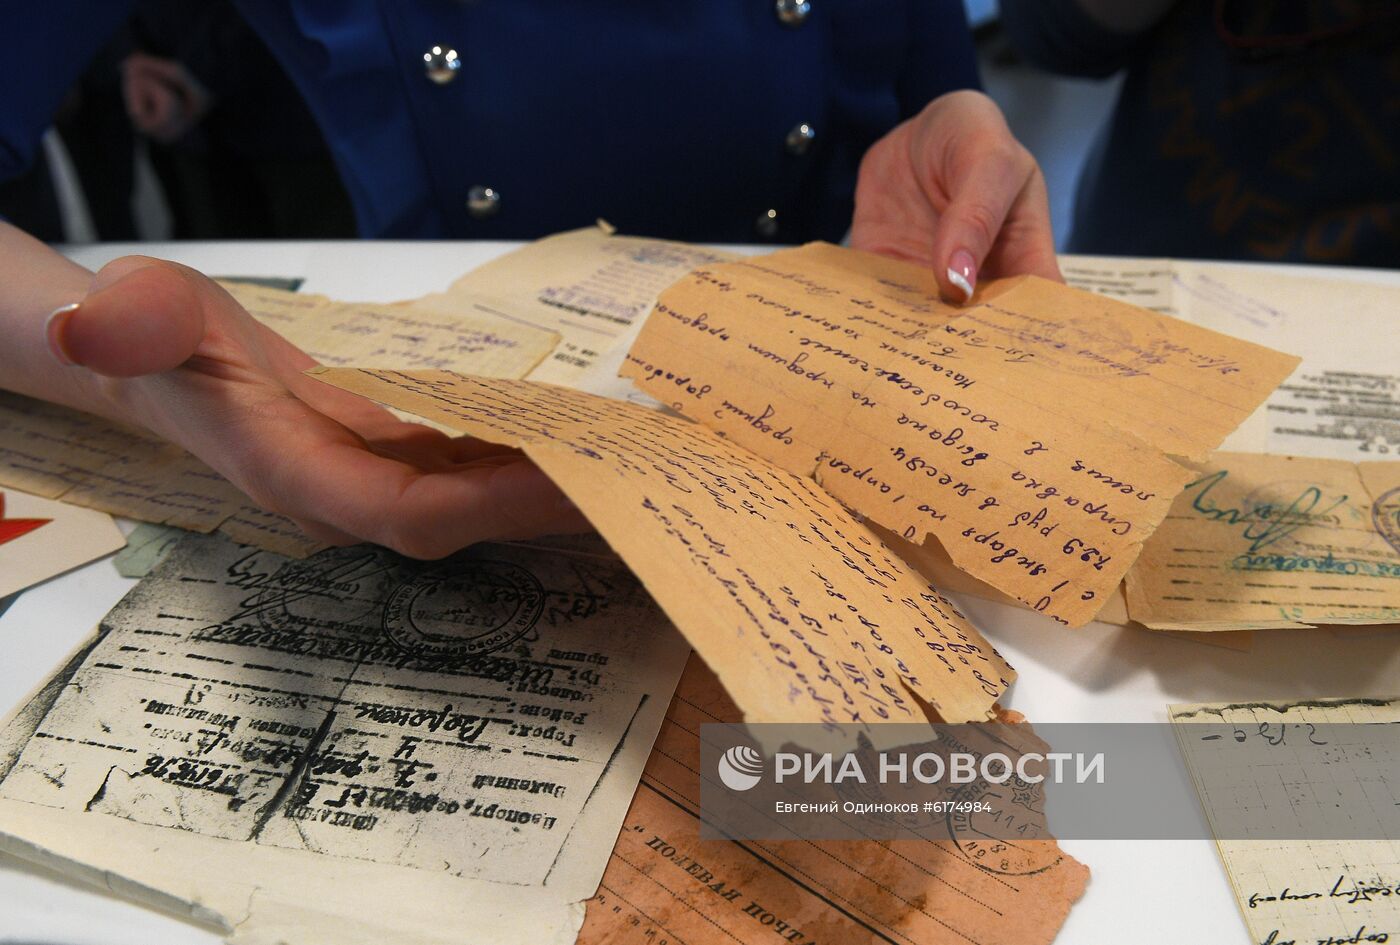 Открытие пункта приема документов для проекта "Дорога памяти" в Москве